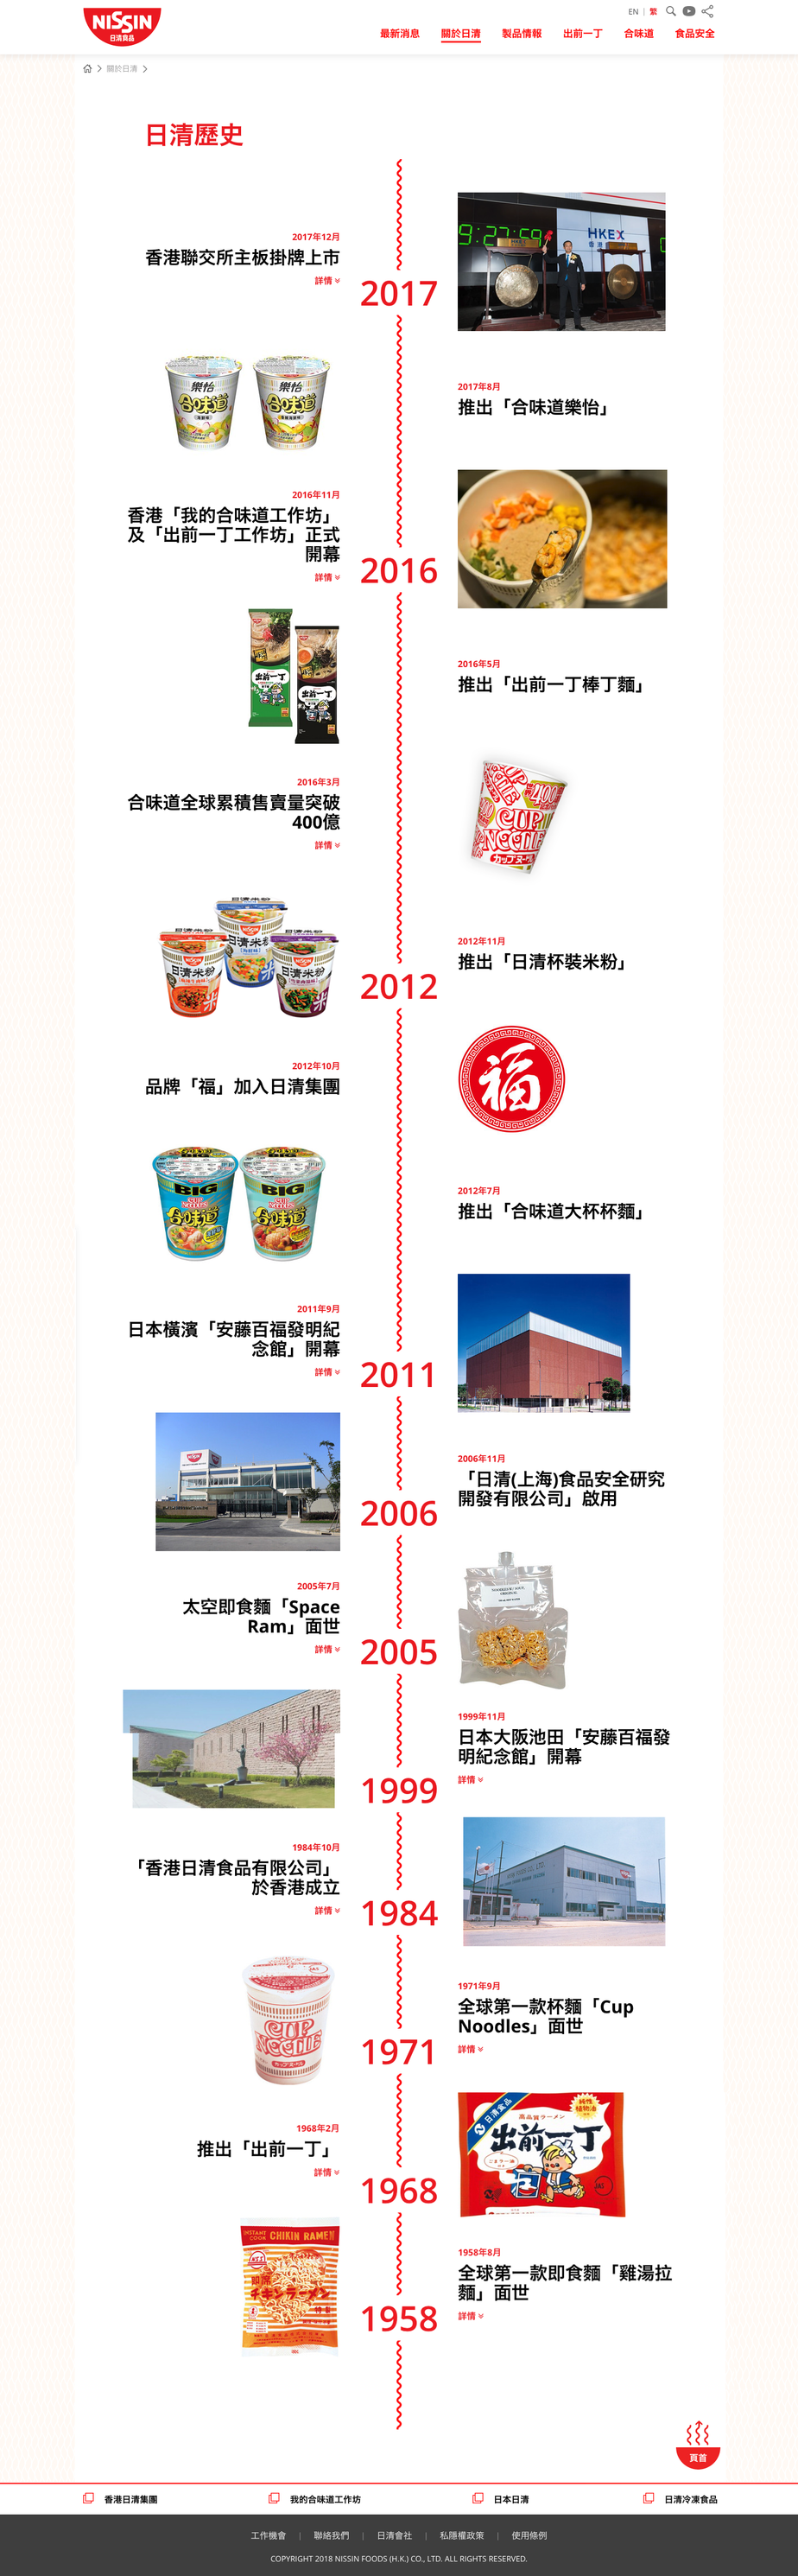 Nissin Foods HK website screenshot for desktop version 2 of 4